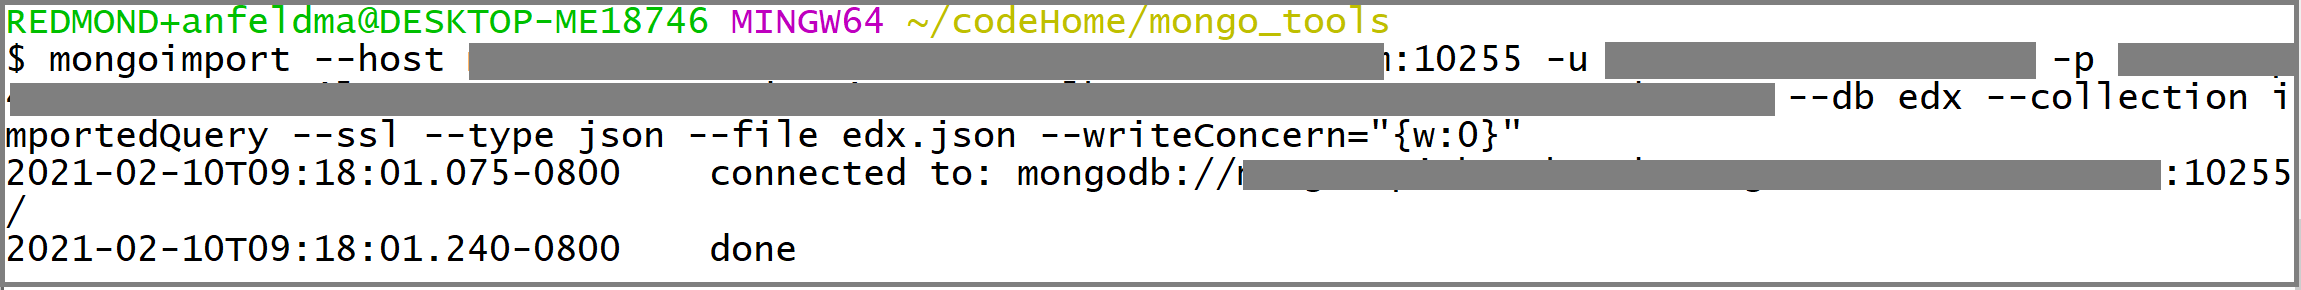 Captura de pantalla de una llamada a mongoimport.